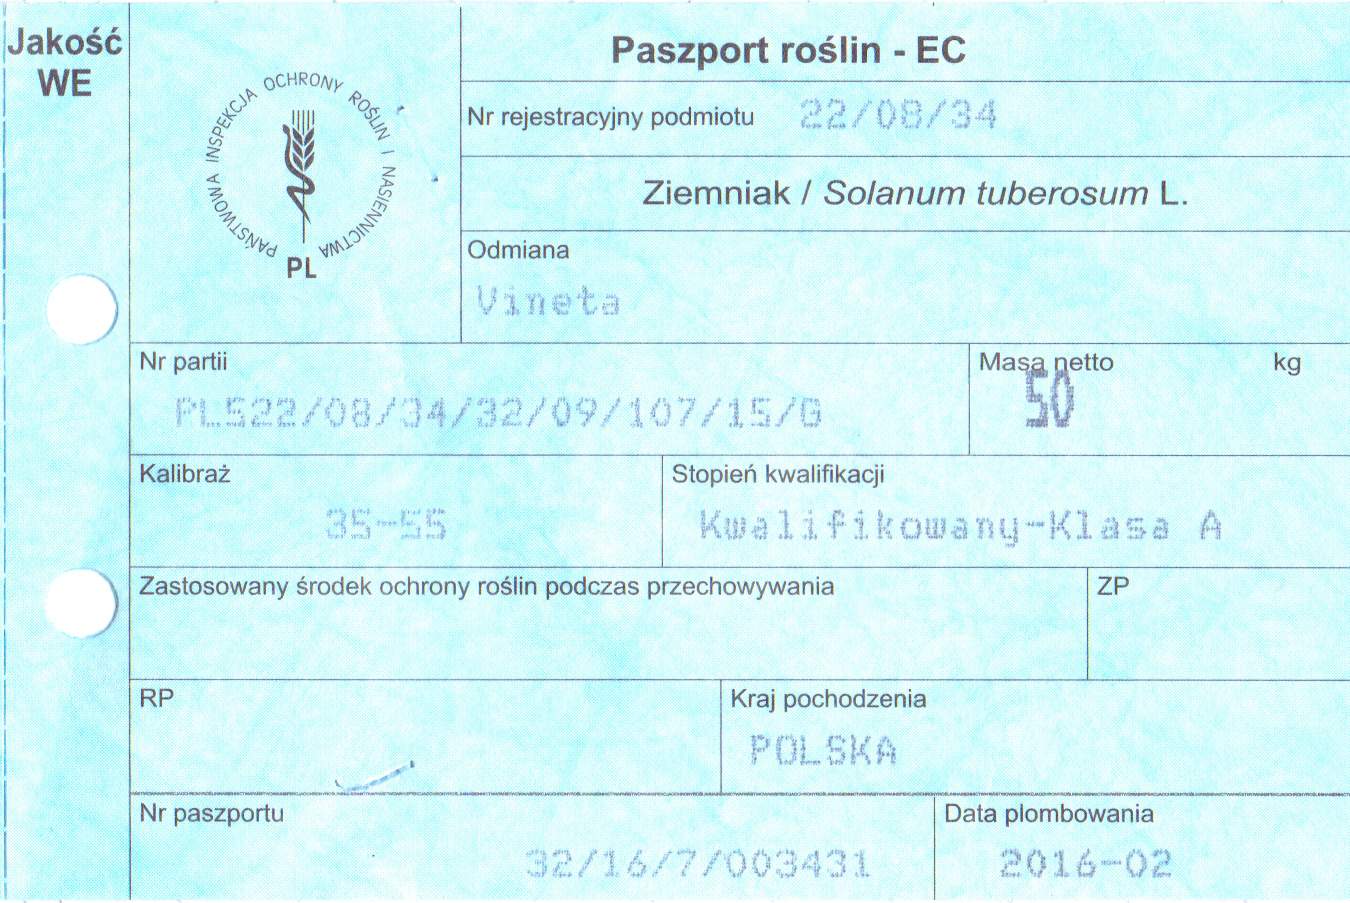 Każdy paszport jest drukiem ścisłego zarachowania, ma swój unikatowy numer oraz zawiera między innymi informacje o producencie i miejscu pochodzenia (wszystko zapisane jest w numerze partii)